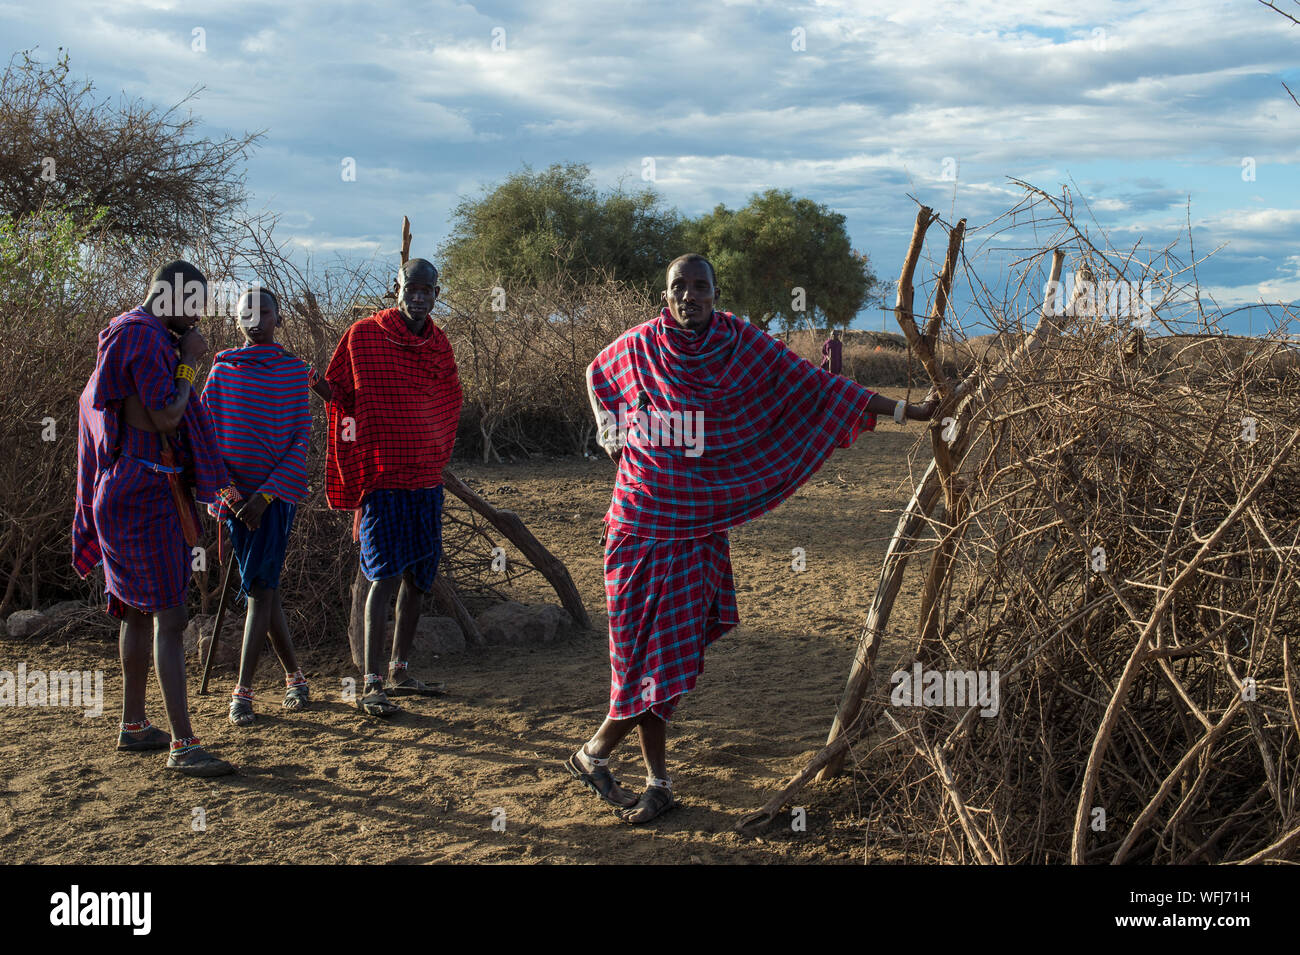 Masai Tribe, Amboseli National Park, Kenya Stock Photo